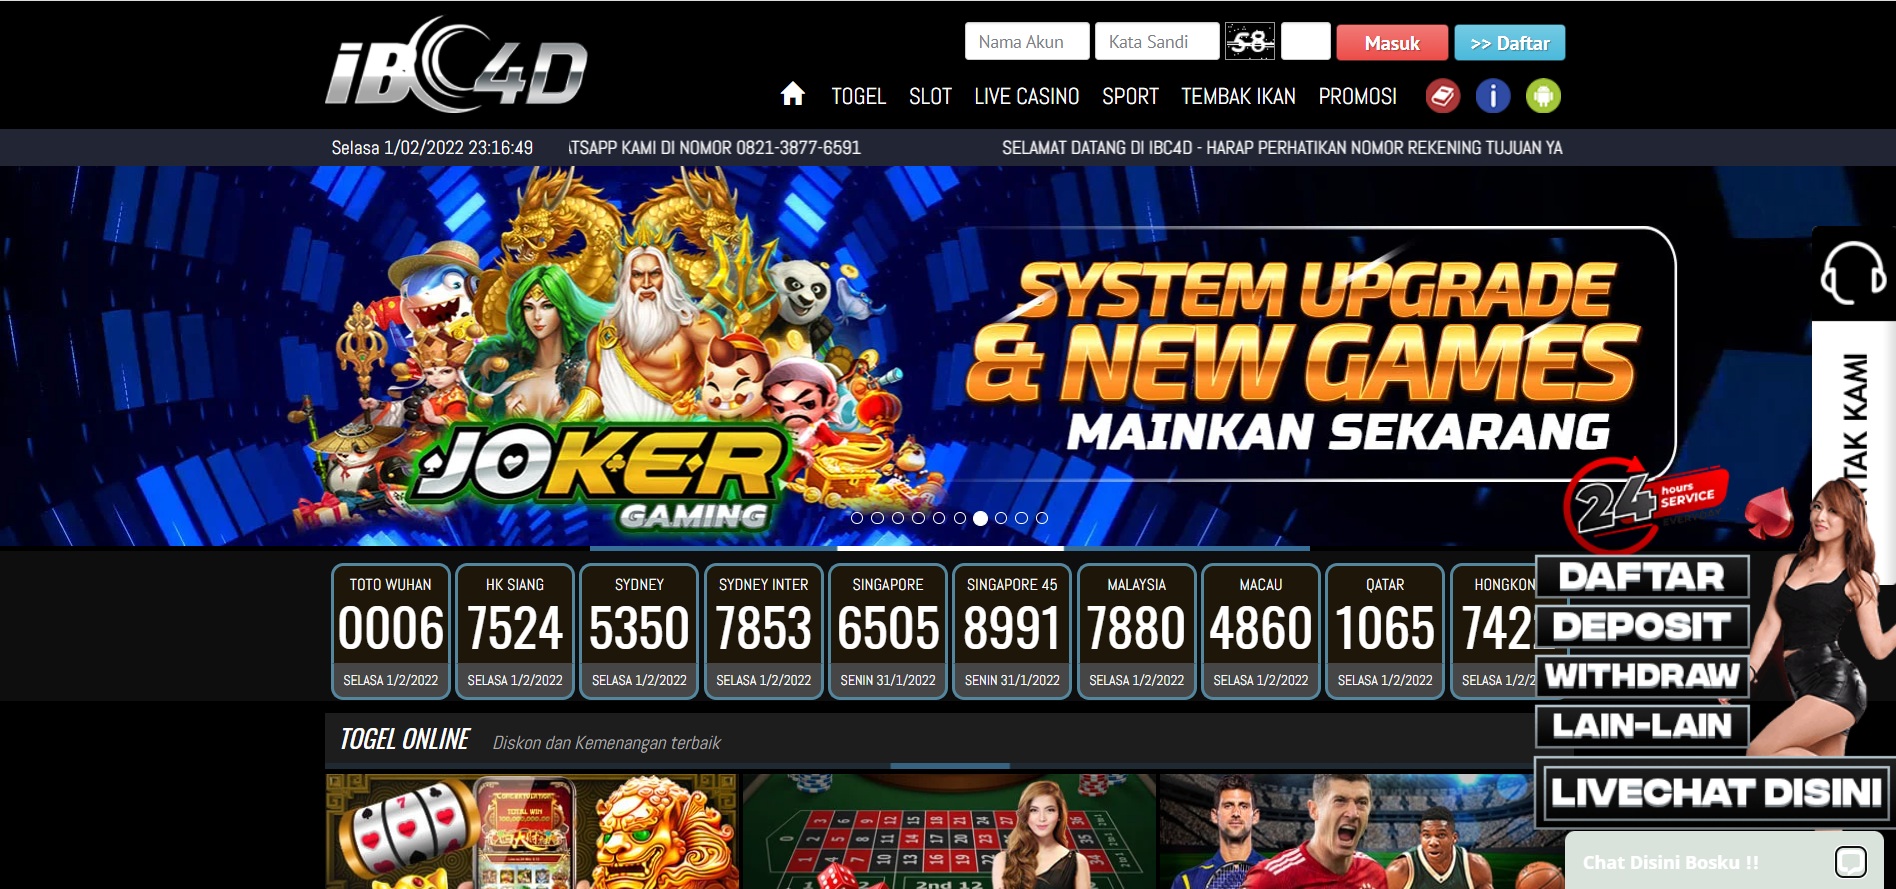 IBC4D - Situs Judi Slot & Casino Terpercaya